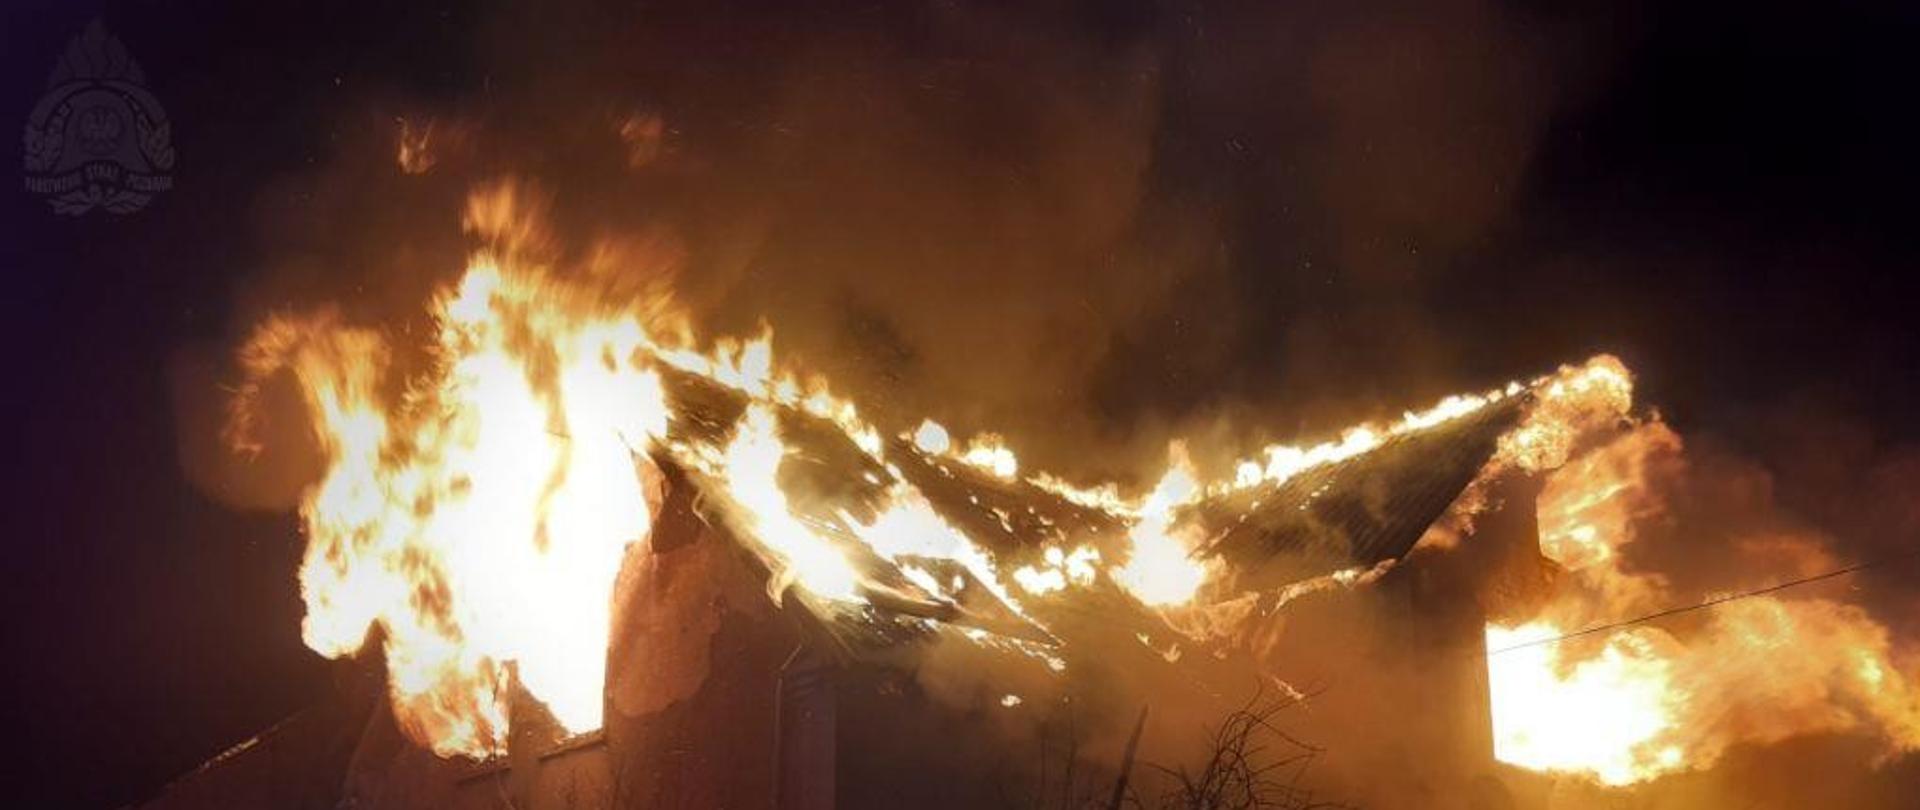 Pożar domu jednorodzinnego w miejscowości Solniki